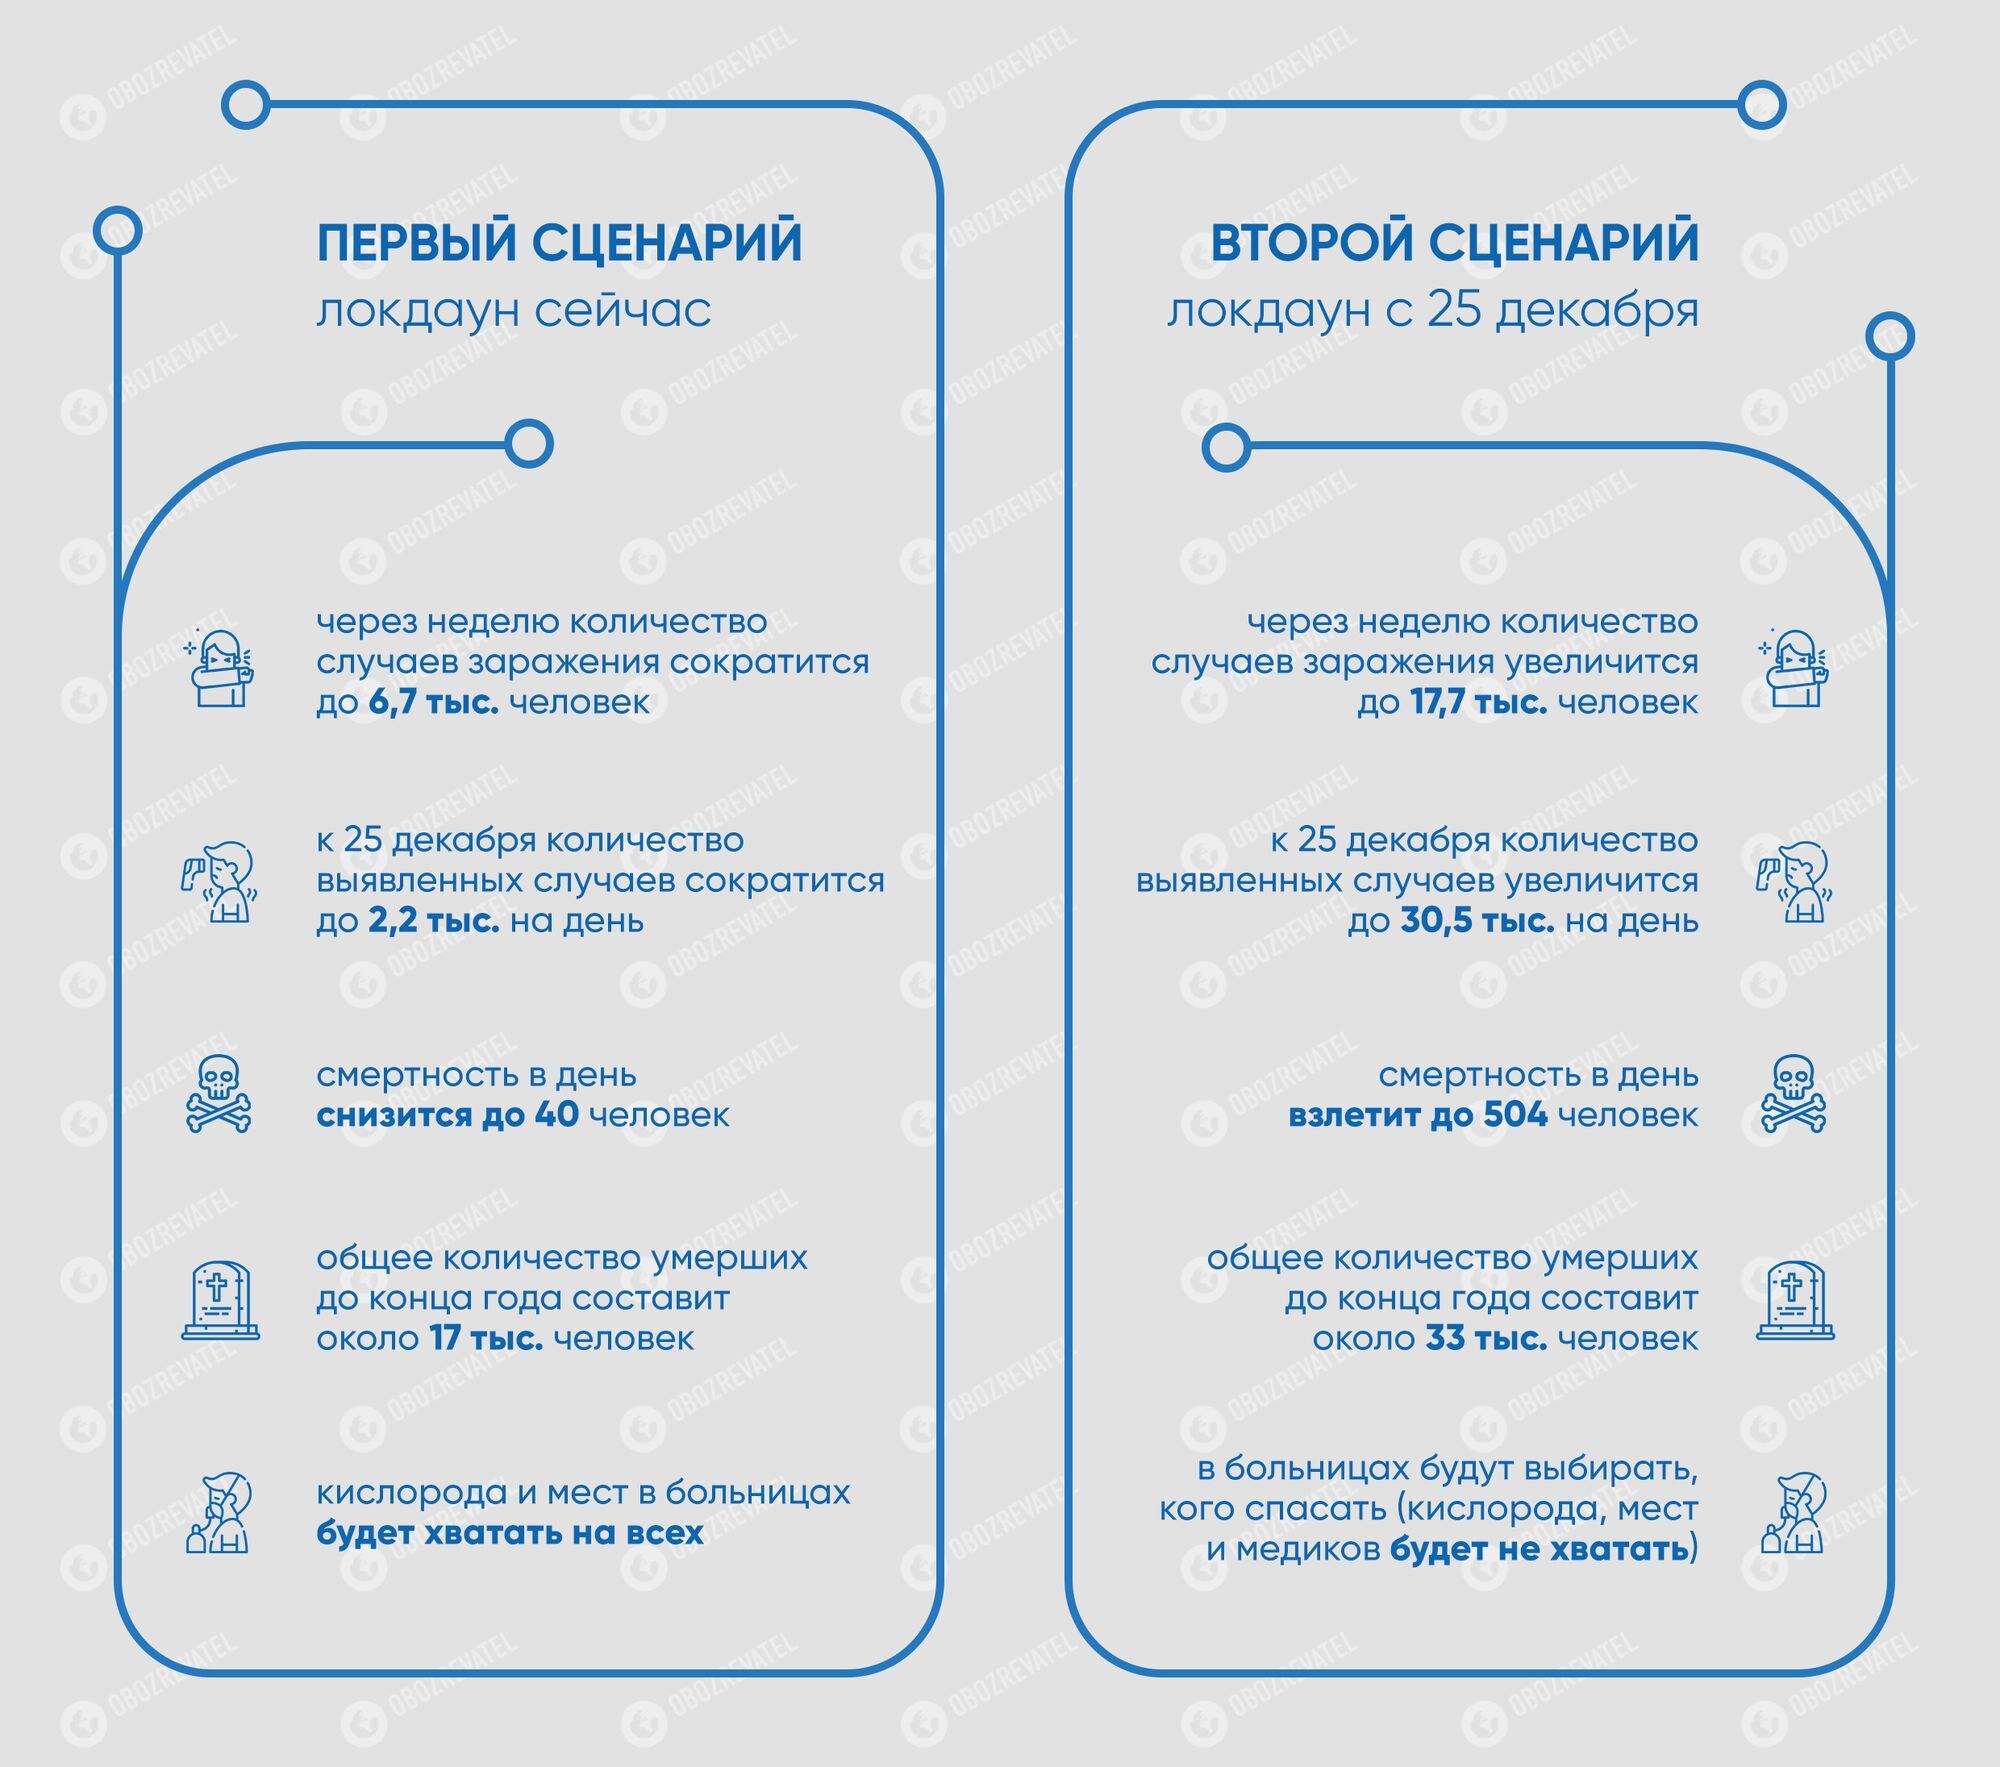 Сценарии борьбы с COVID-19 в Украине